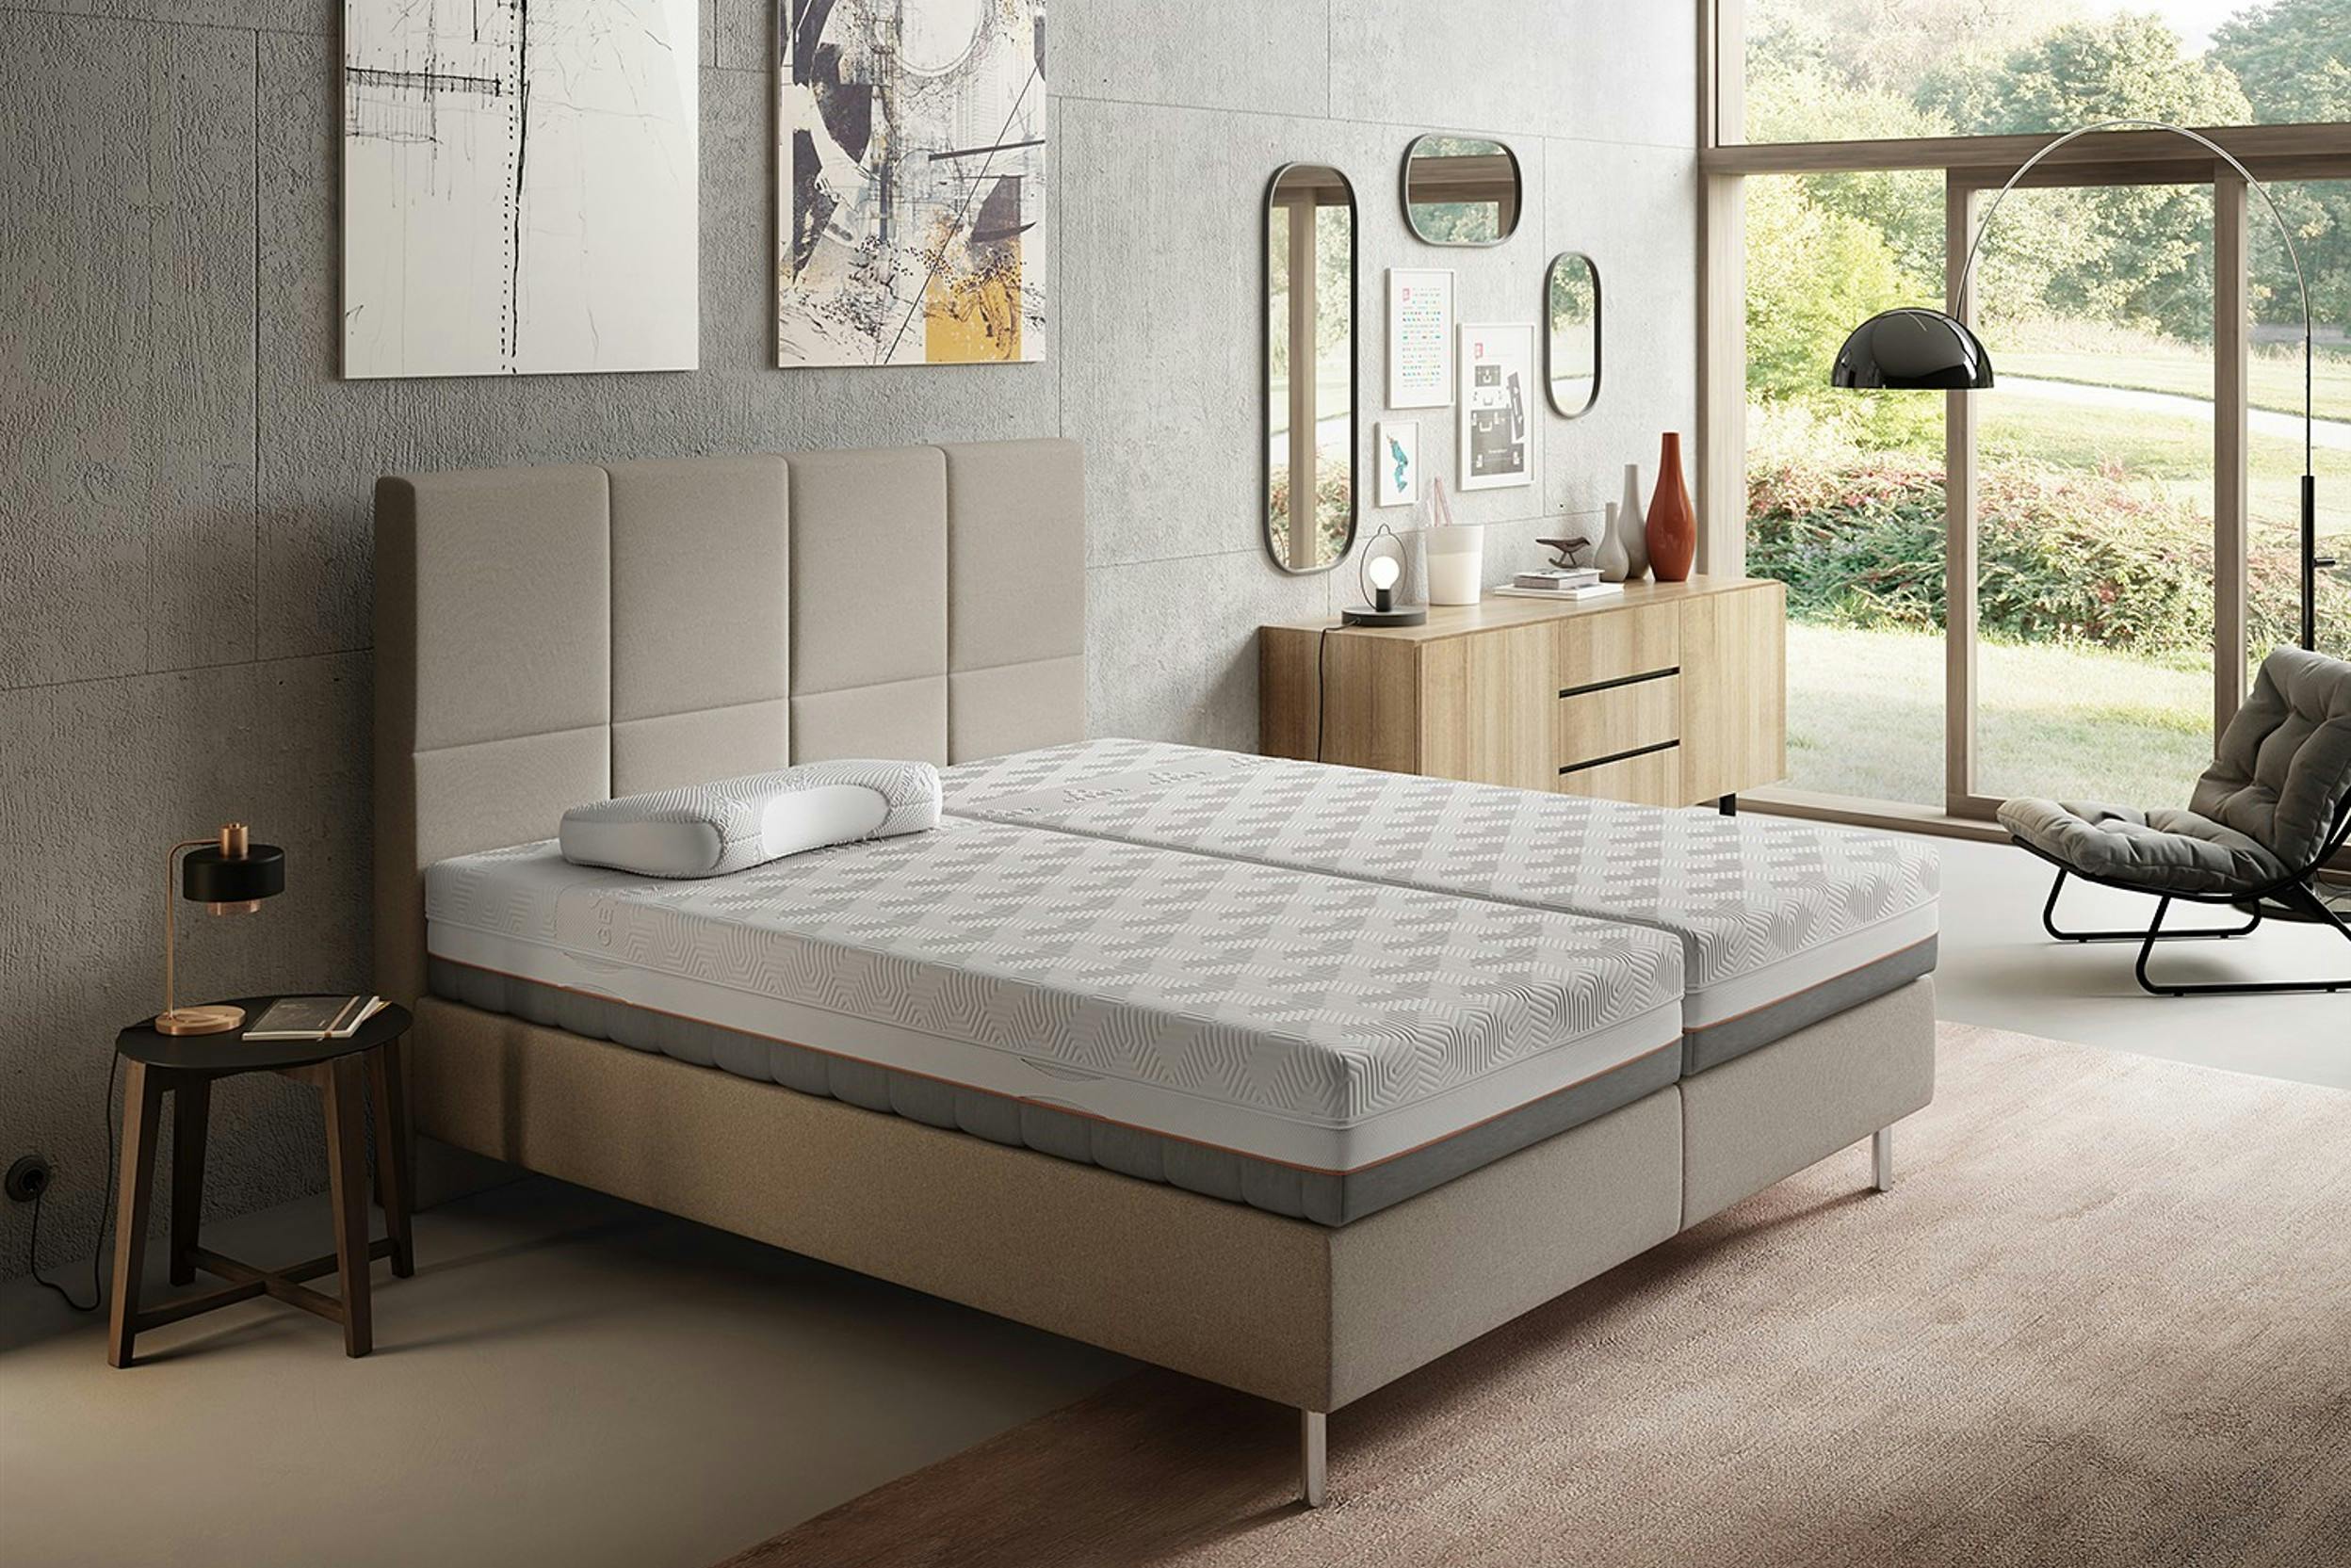 Slaapkamer in grijs- en beigetinten met gestoffeerd bed en gelmatrassen.